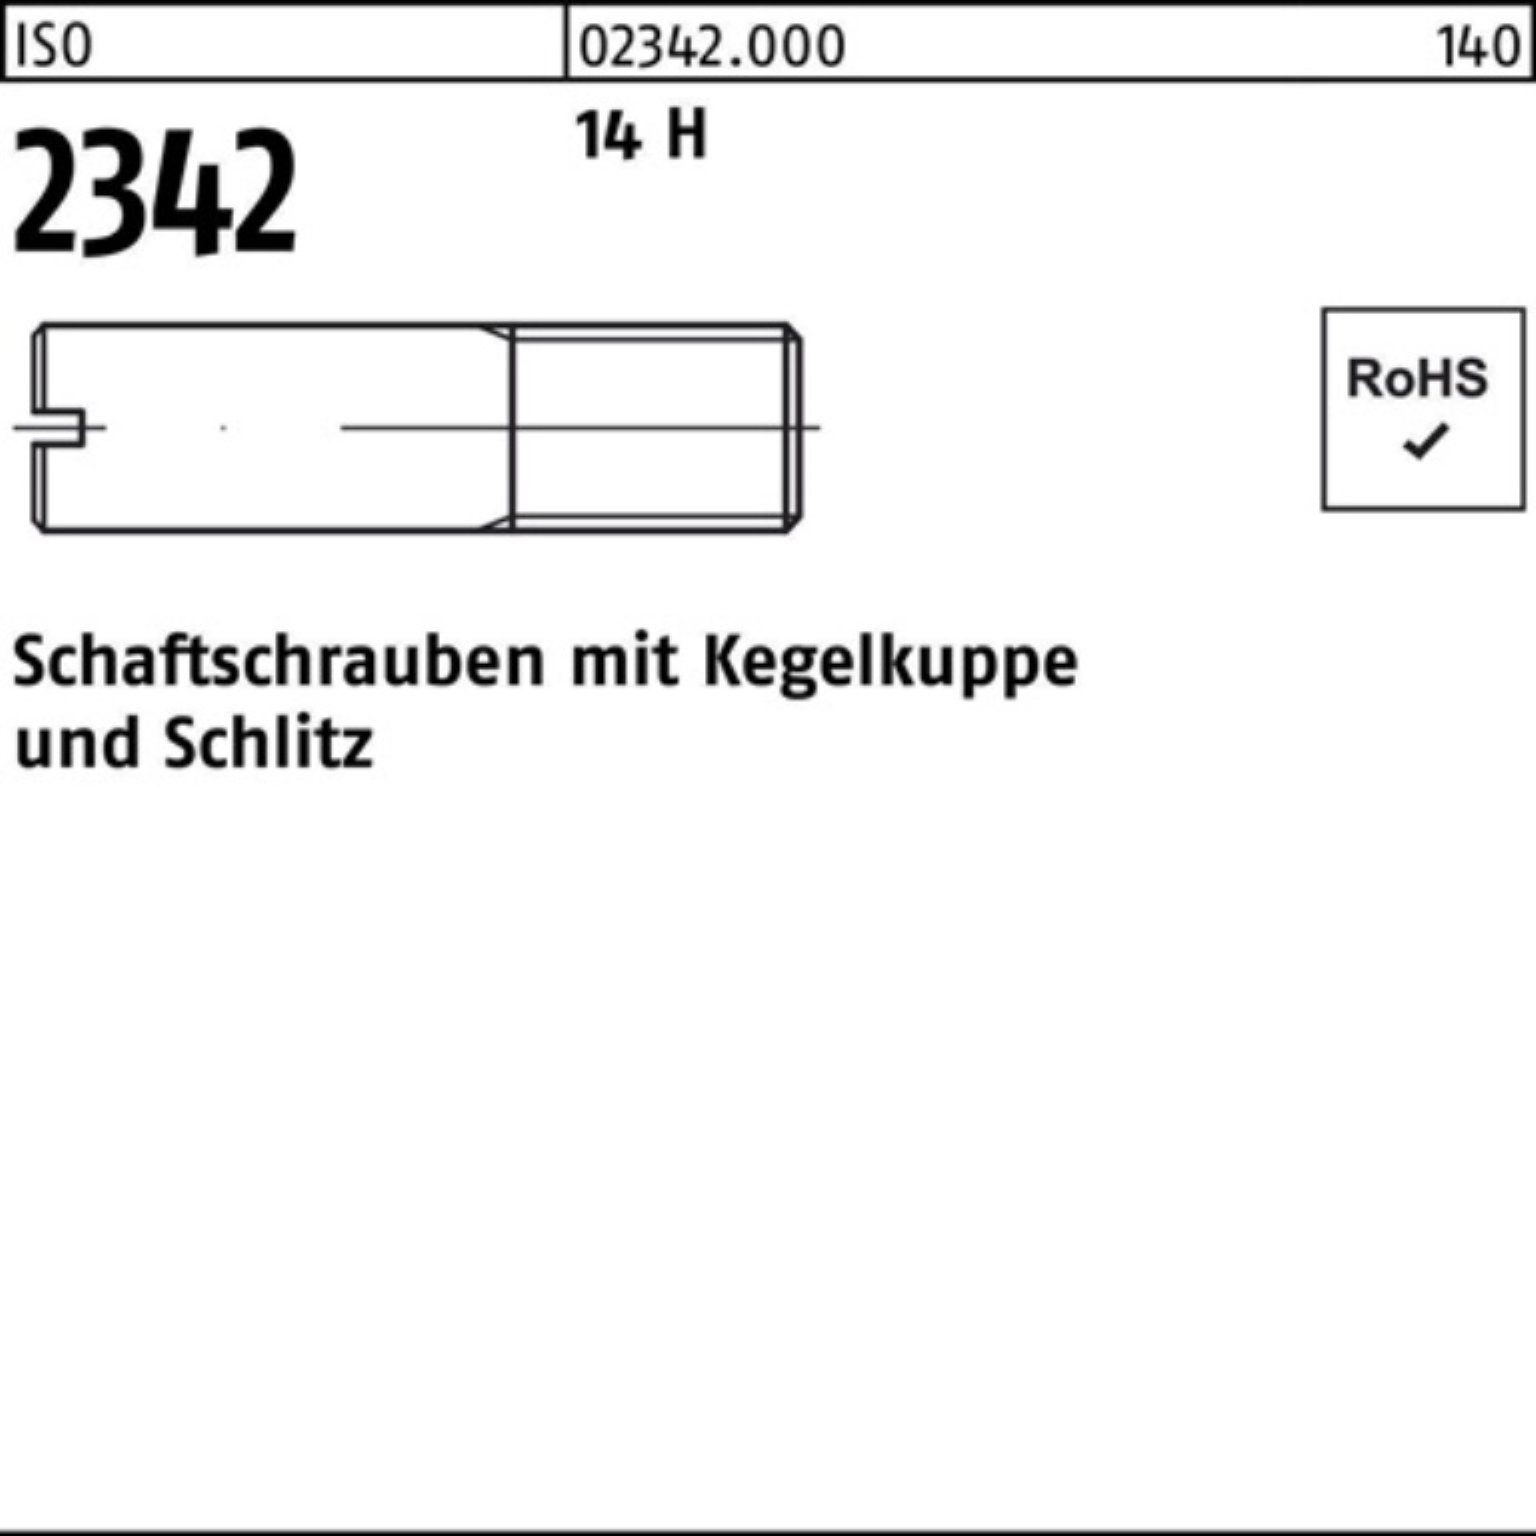 Reyher Schraube 100er Pack Schaftschraube ISO 2342 Kegelkuppe/Schlitz M5x 18 14 H 100